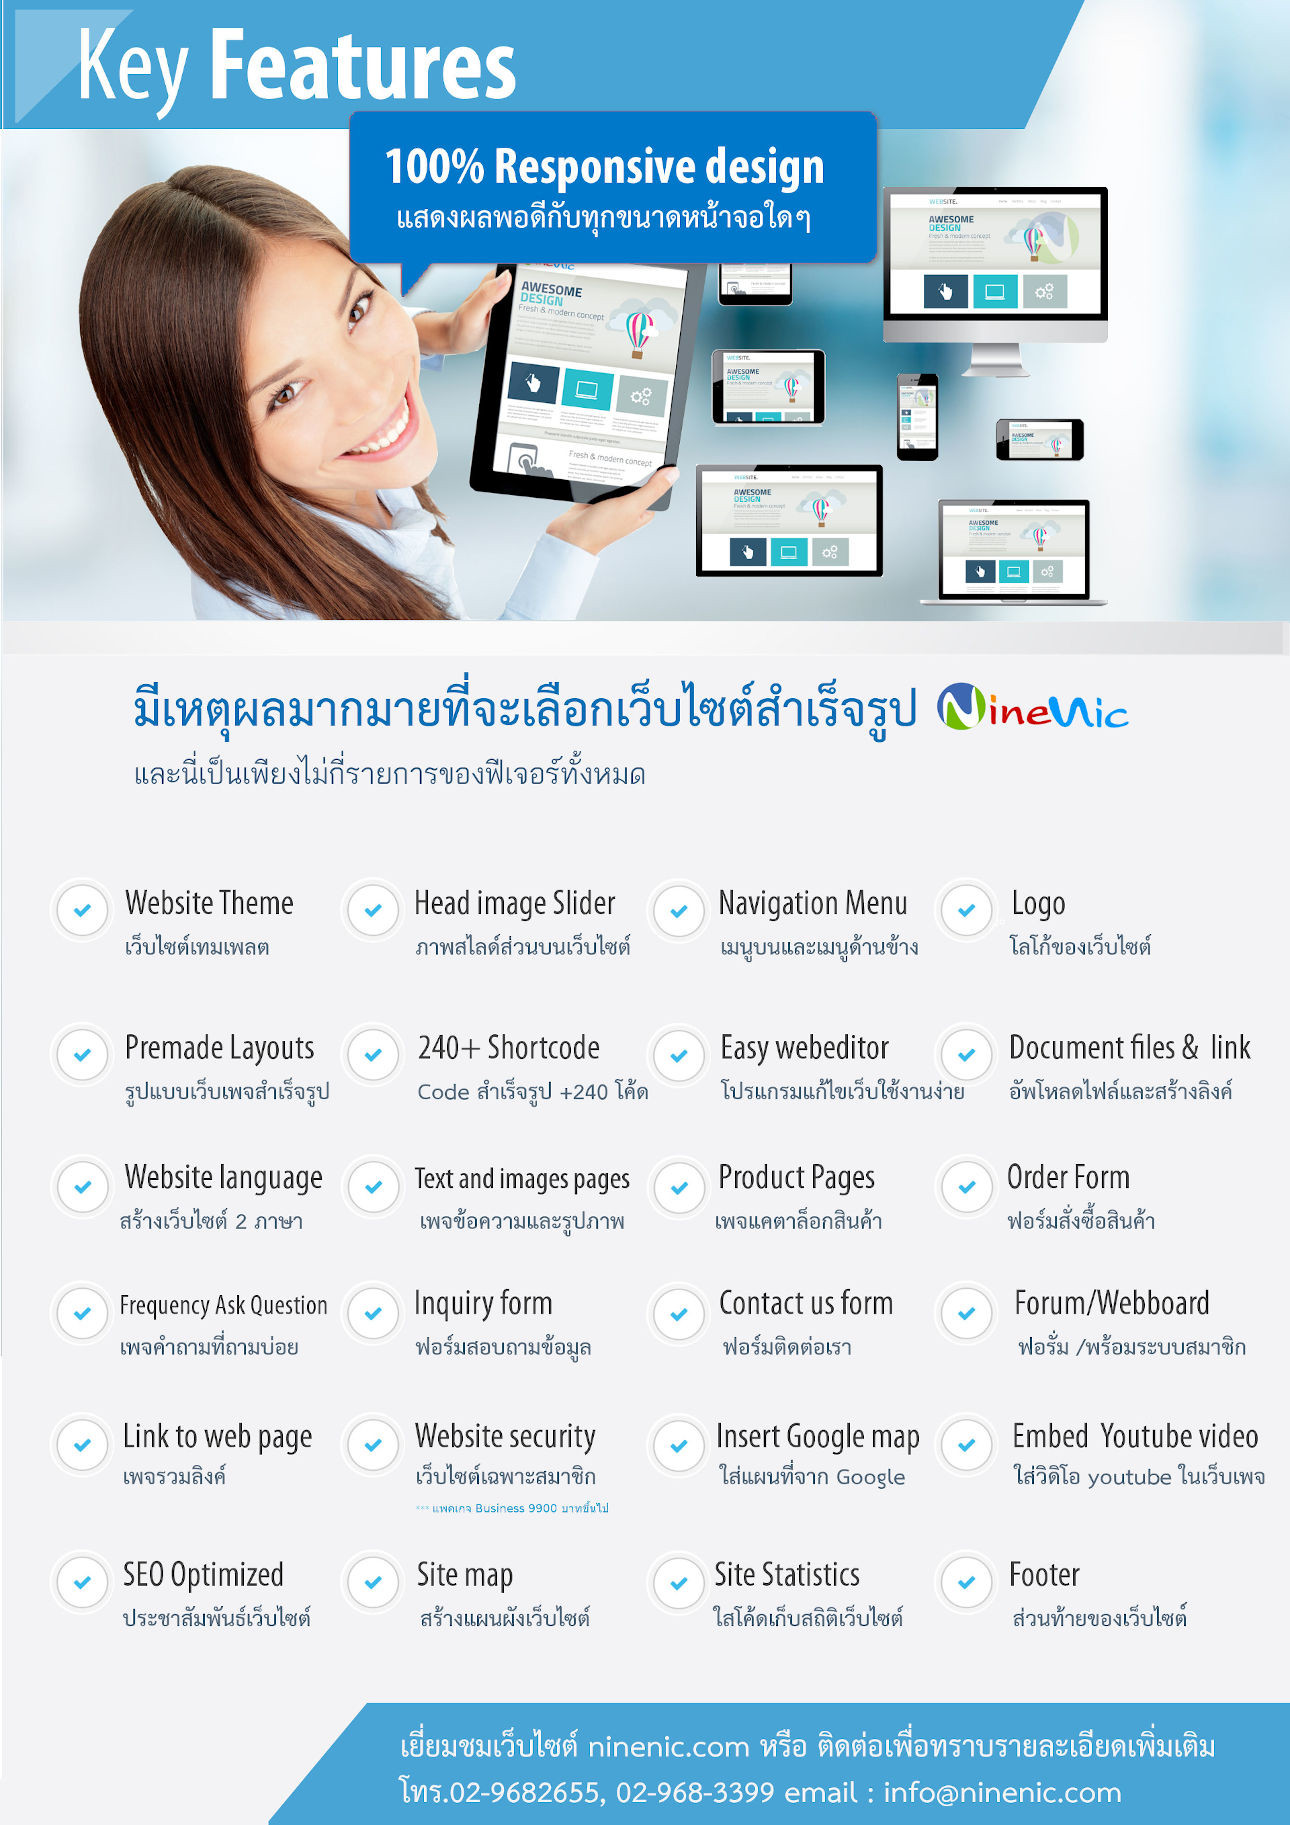 ฟีเจอร์ที่โดดเด่นของเว็บสำเร็จรูป- โบรชัวร์เว็บสำเร็จรูปสำหรับองค์กร ธุรกิจ-เว็บไซต์สำเร็จรูปไทย บริการ เว็บสำเร็จรูปใช้งานง่าย เว็บสำเร็จรูปสำหรับธุรกิจและอีคอมเมอร์ส รองรับอุปกรณ์โทรศัพท์มือถือ แท็บเล็ต บริการเว็บไซต์สำเร็จรูป สำหรับเปิดร้านค้าออนไลน์ ขายของออนไลน์ ขายสินค้าออนไลน์ พร้อมตระกร้าสินค้า ecommerce solution - เว็บสำเร็จรูป ฟรีโดเมน ฟรี SSL ฟรีเว็บไซต์เทมเพลต Layout สำเร็จรูป แนะนำเว็บสำเร็จรูปและการสร้างเว็บไซต์ ออกแบบเว็บไซต์ บริการดี ดูแลดี แนะนำโดย เว็บไซต์สำเร็จรูปไทย.com เว็บไซต์สำเร็จรูปพร้อมฟีเจอร์มากมาย เว็บไซต์สำเร็จรูปที่มี รูปแบบเว็บเพจที่ตรงกับความต้องการของคุณ สนับสนุนเครื่องมือค้นหาจาก Search engine รูปแบบเว็บไซต์สวยงาม Themes & Template พร้อม Layout ของเว็บไซต์สำเร็จรูป